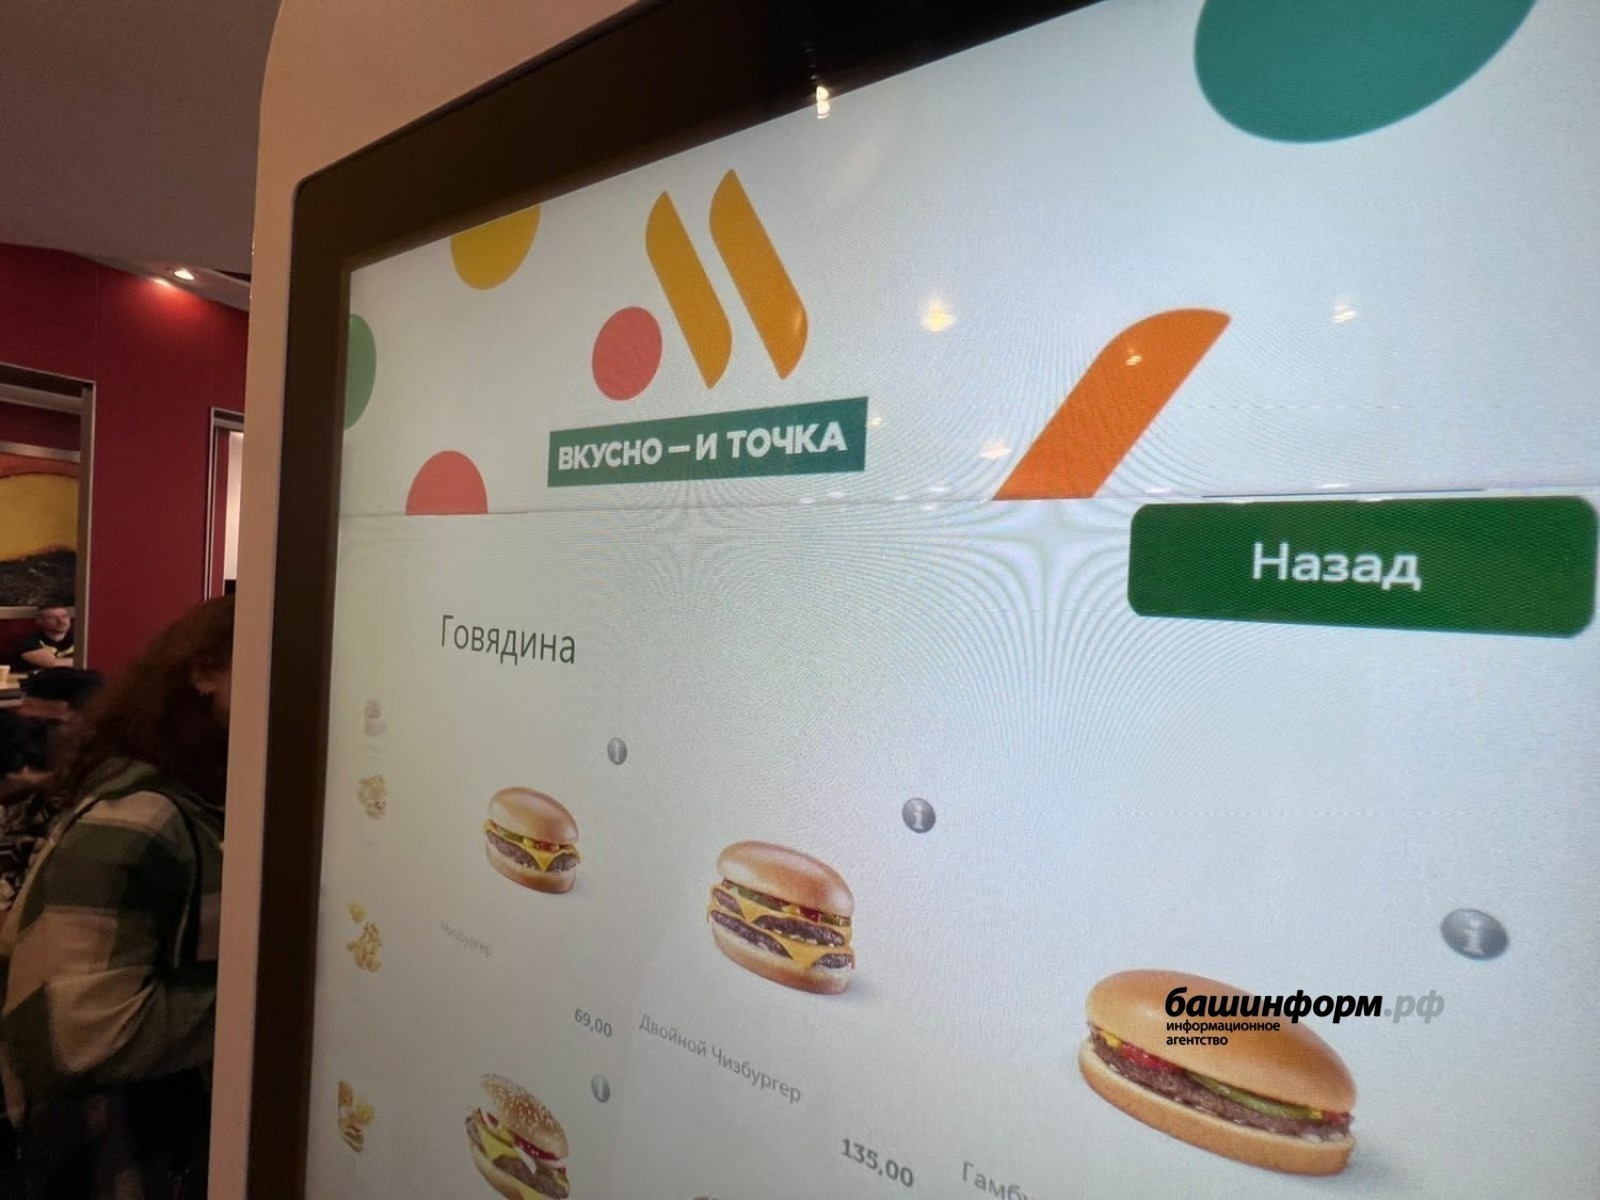 В столице Башкирии открылись ещё три ресторана под новым брендом